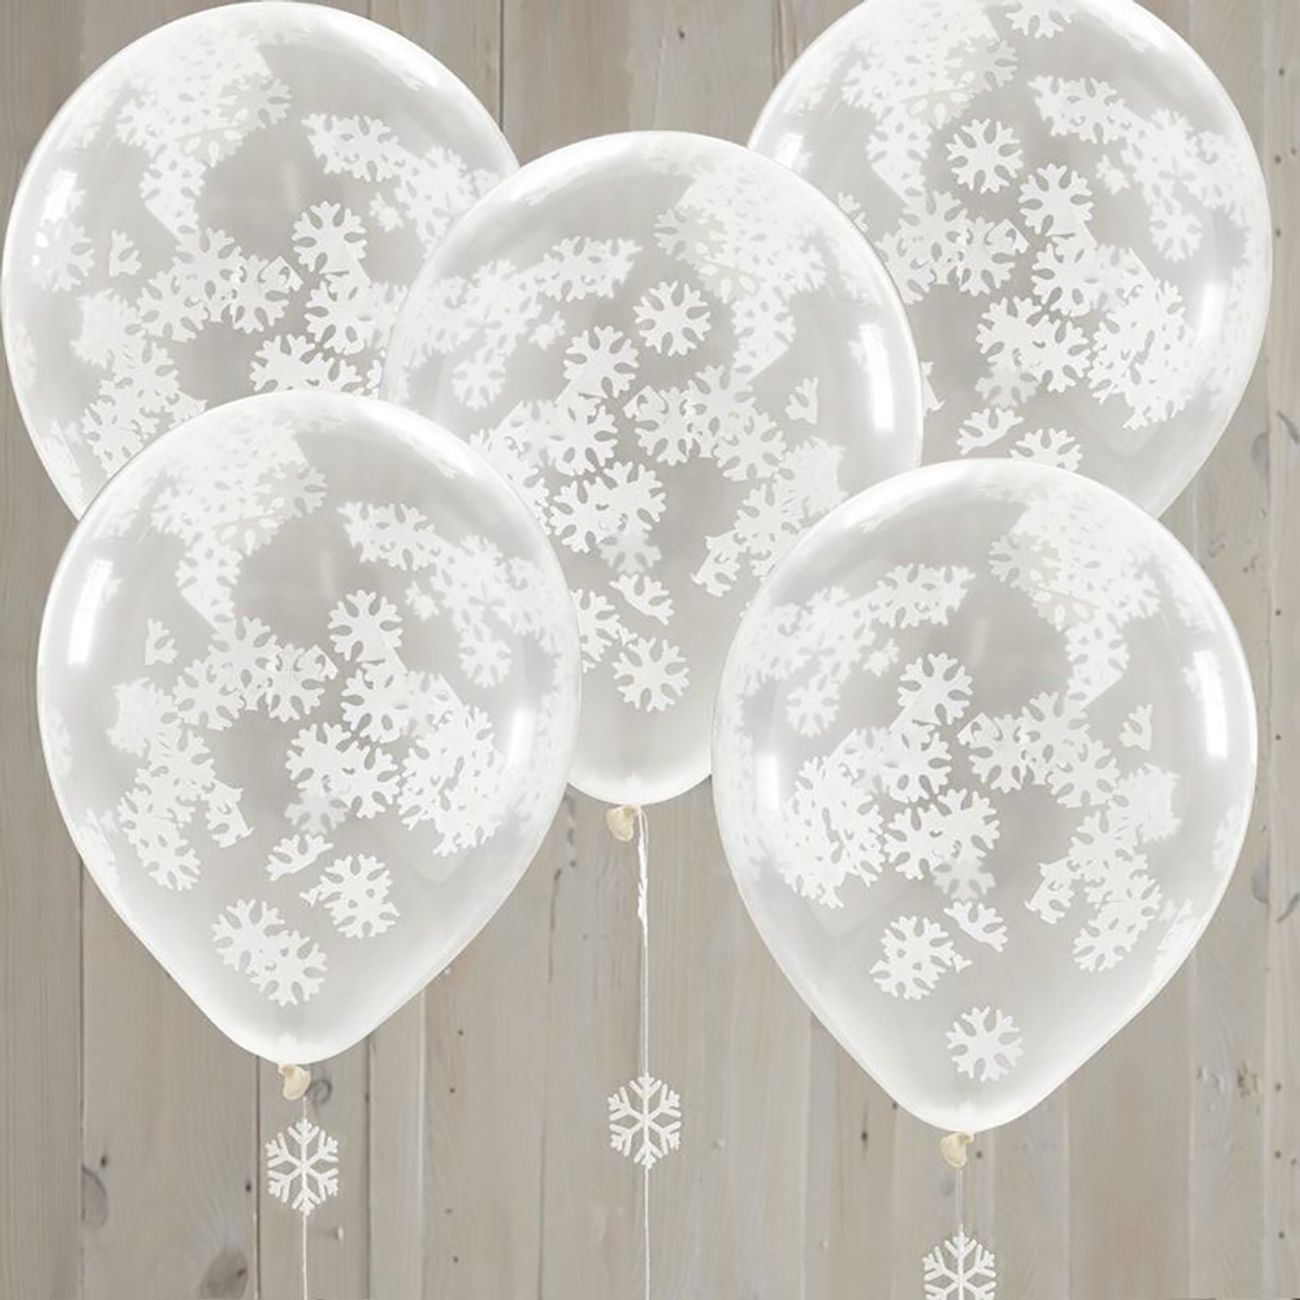 vita-konfetti-ballonger-med-snoflingor-79185-2